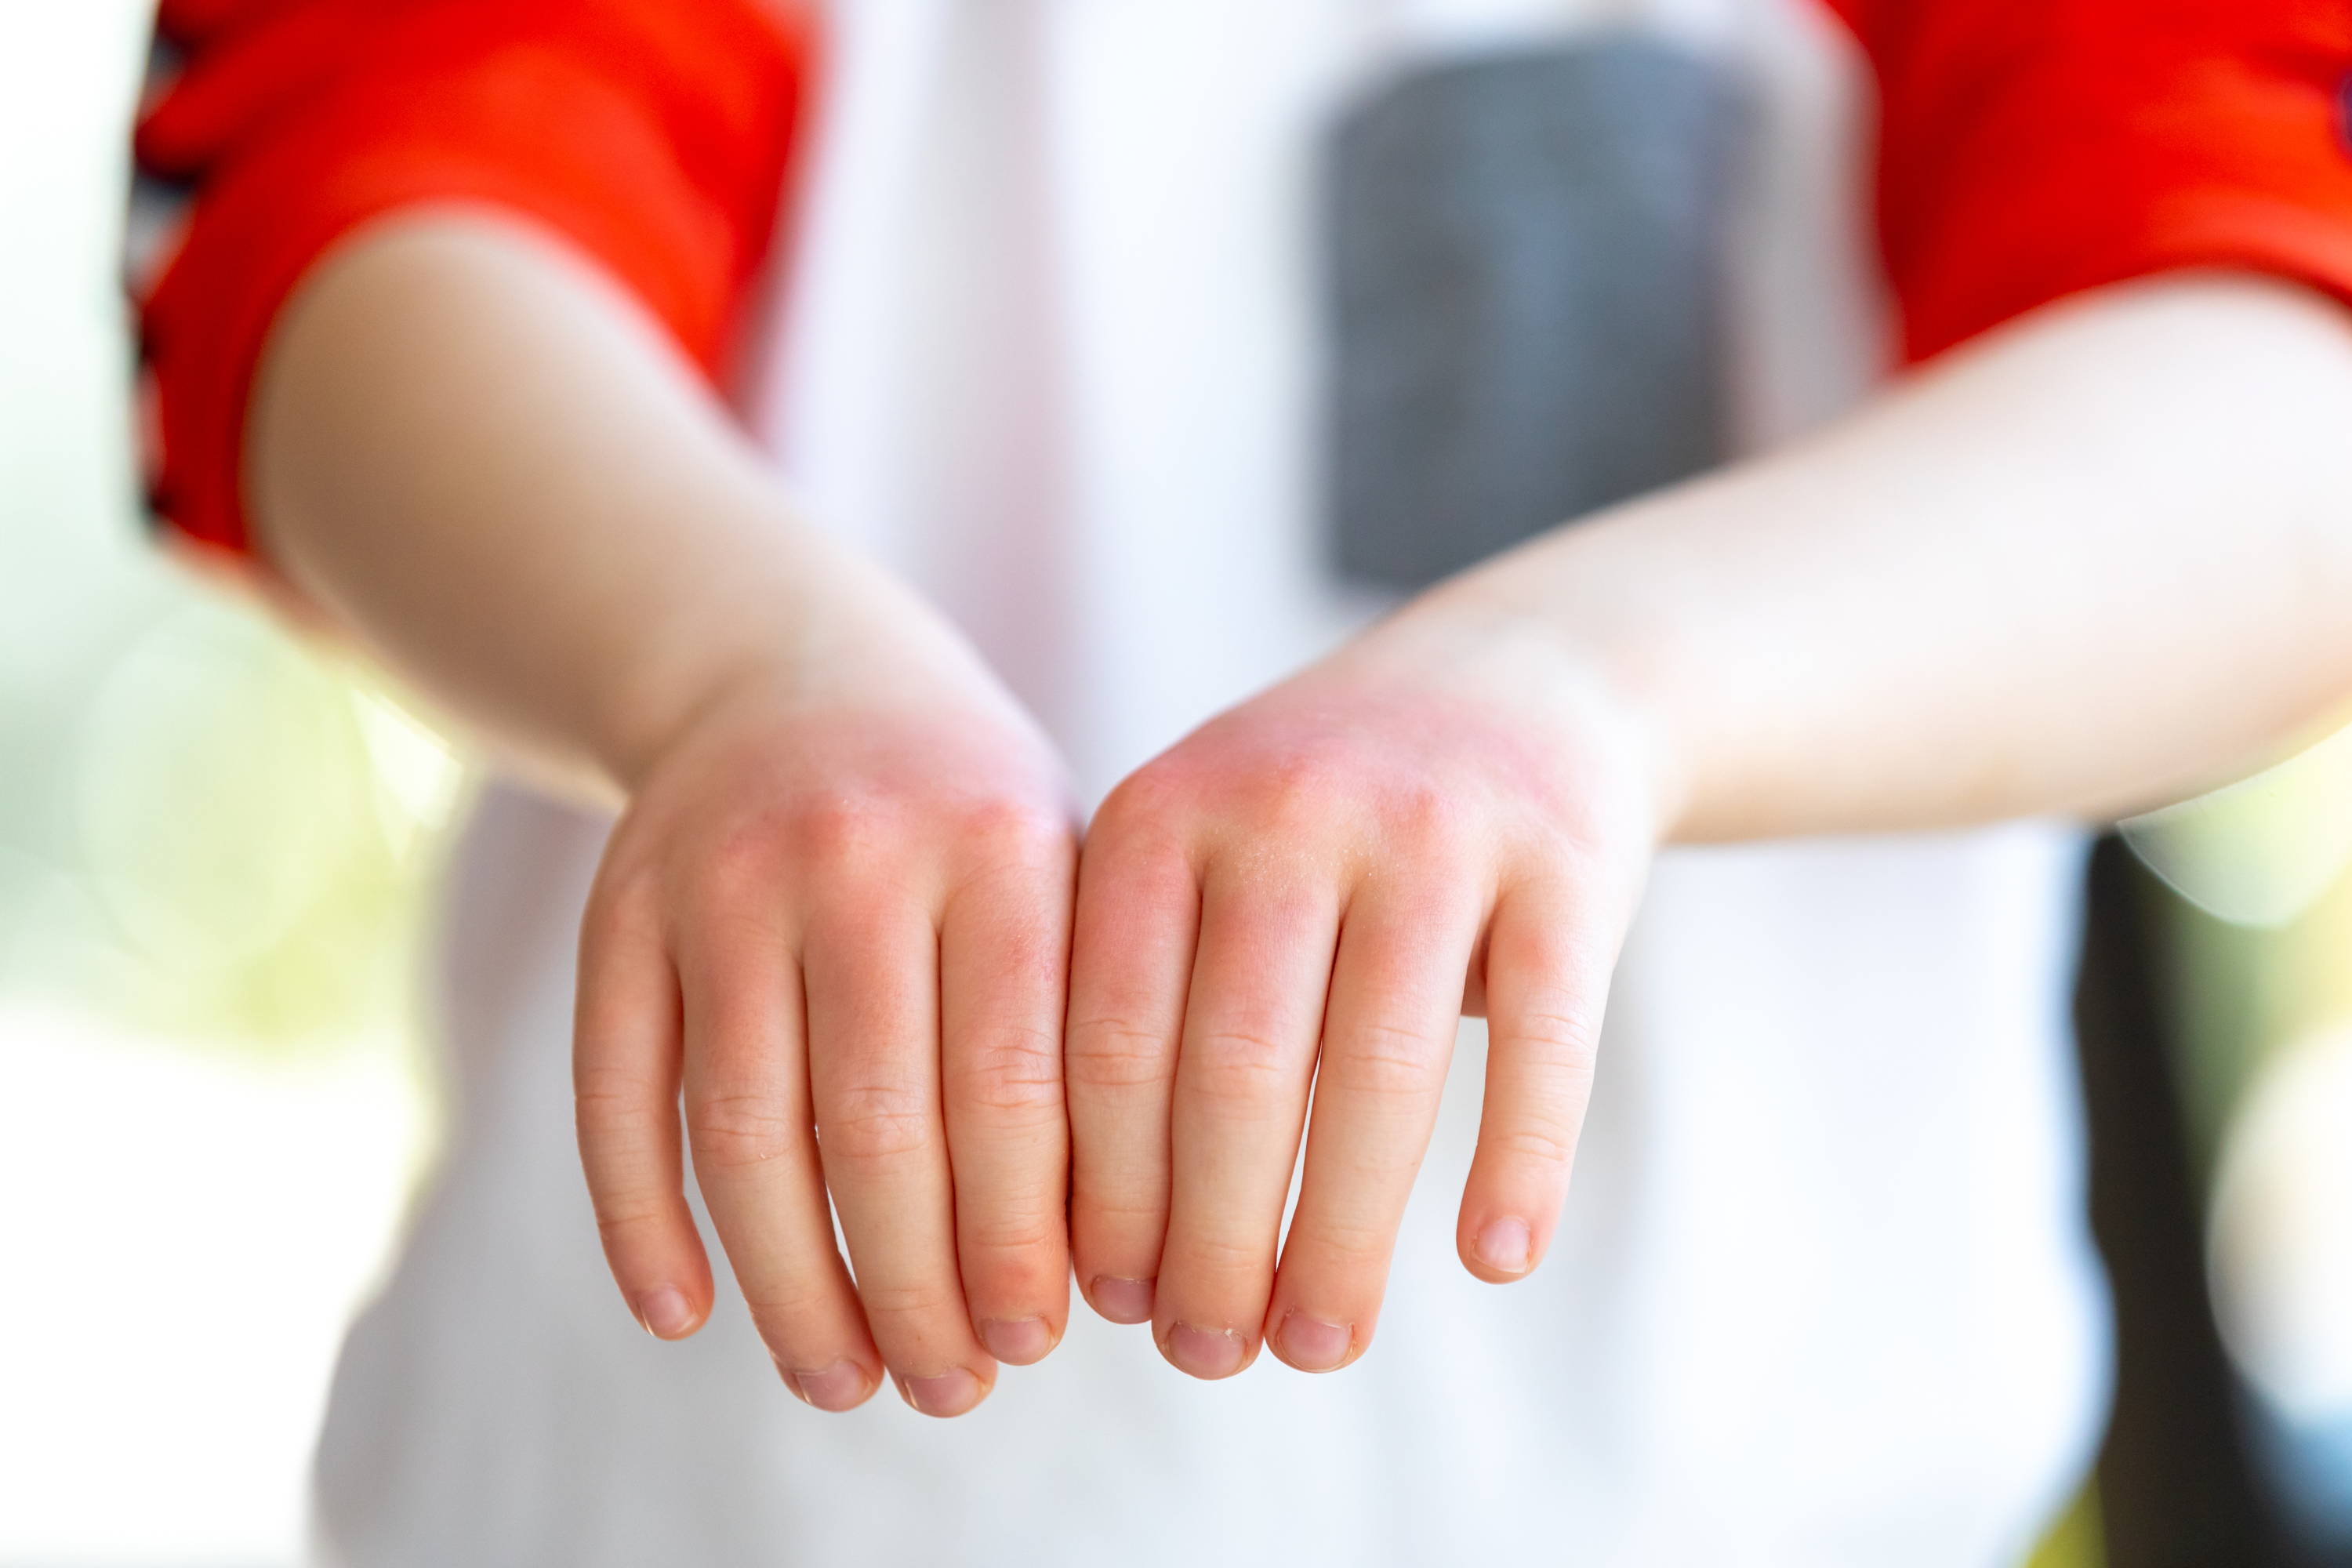 Ein Kind hält die geröteten und schmerzhaft aussehenden Hände vor sich, um die Symptome einer Kontaktallergie auf Seife zu zeigen.